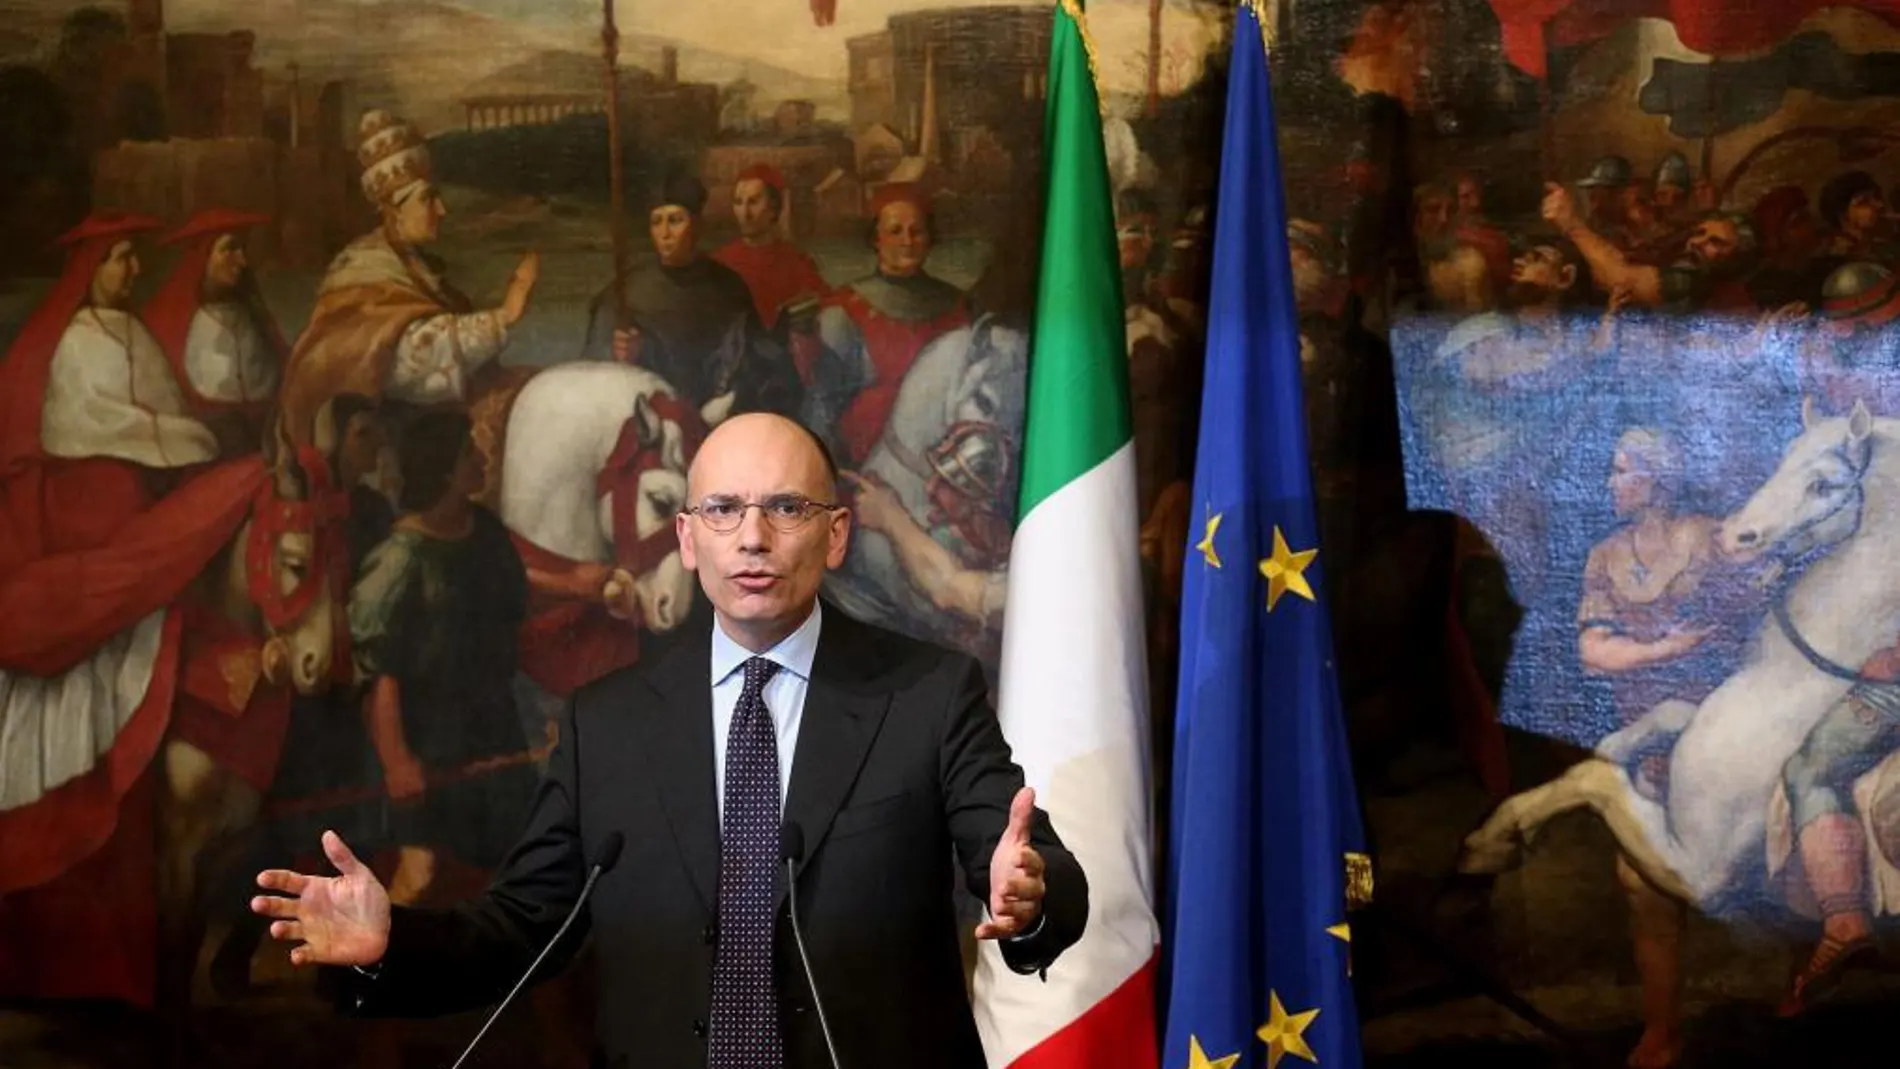 El primer ministro italiano, Enrico Letta, presenta hoy su dimisión al presidente de la República, Giorgio Napolitano